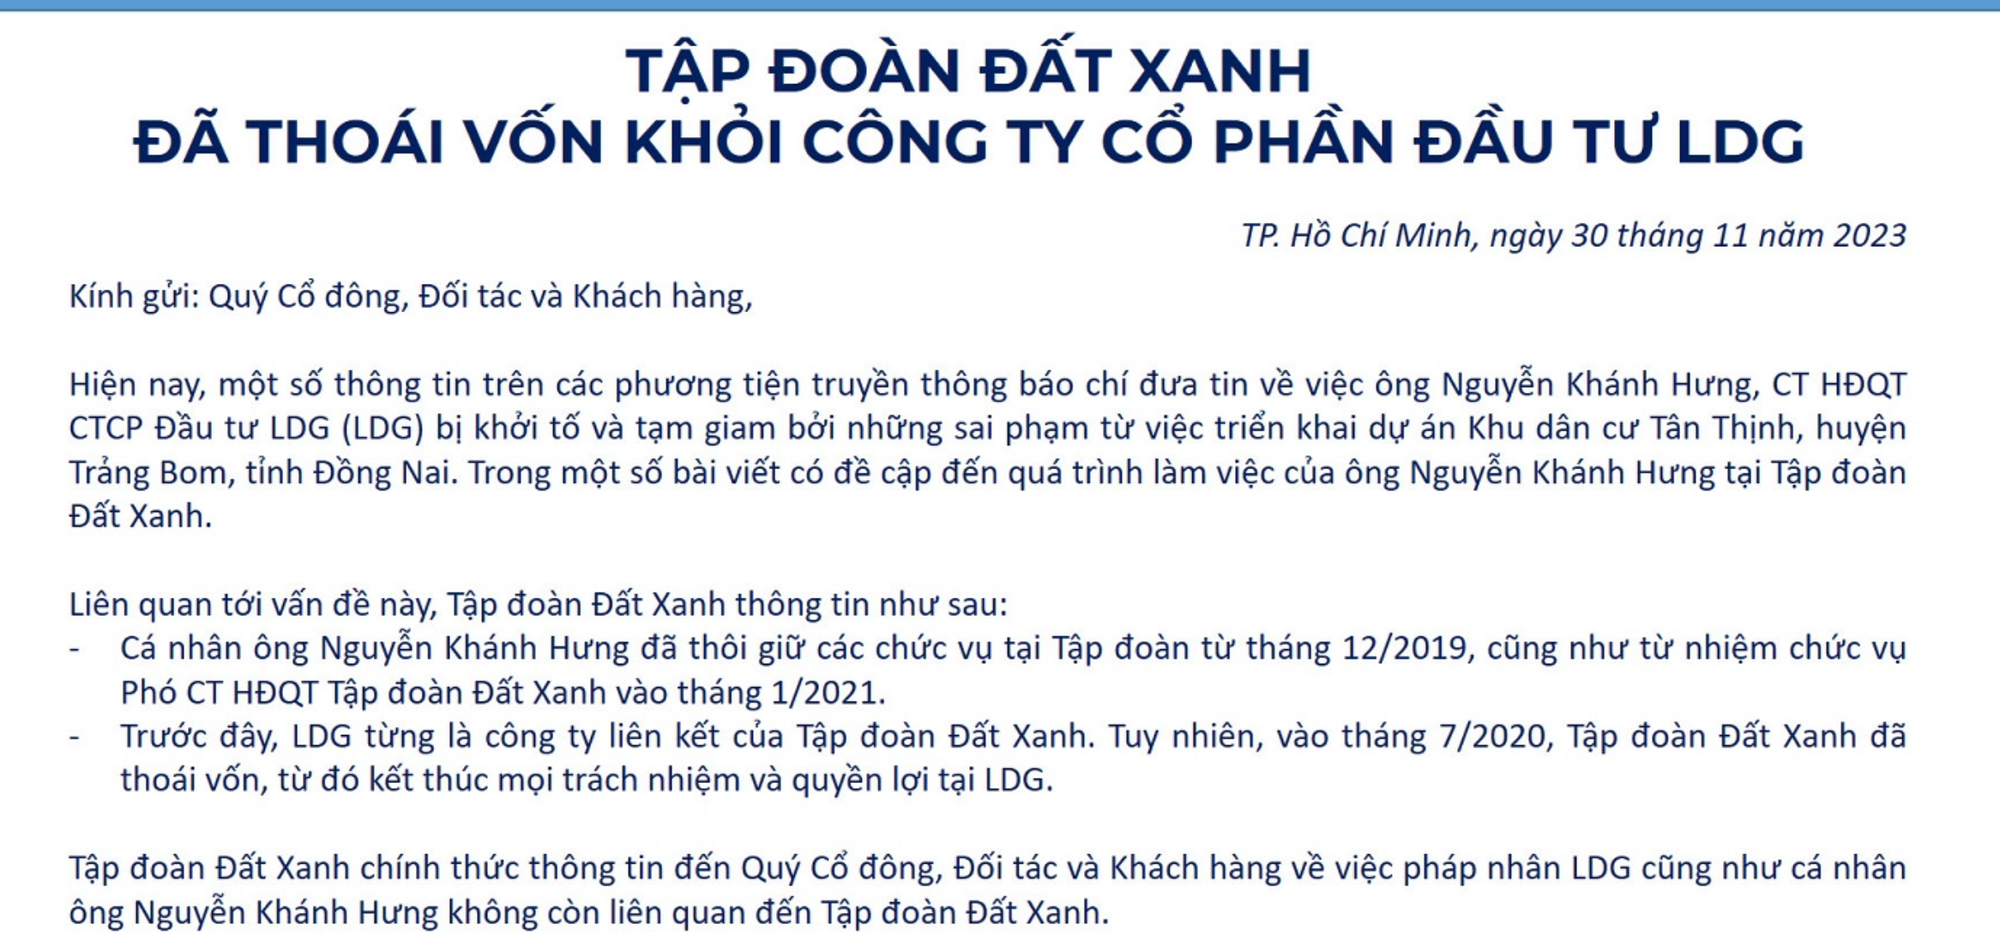 Tập đoàn Đất Xanh lên tiếng sau khi ông Nguyễn Khánh Hưng bị bắt giam - Ảnh 1.